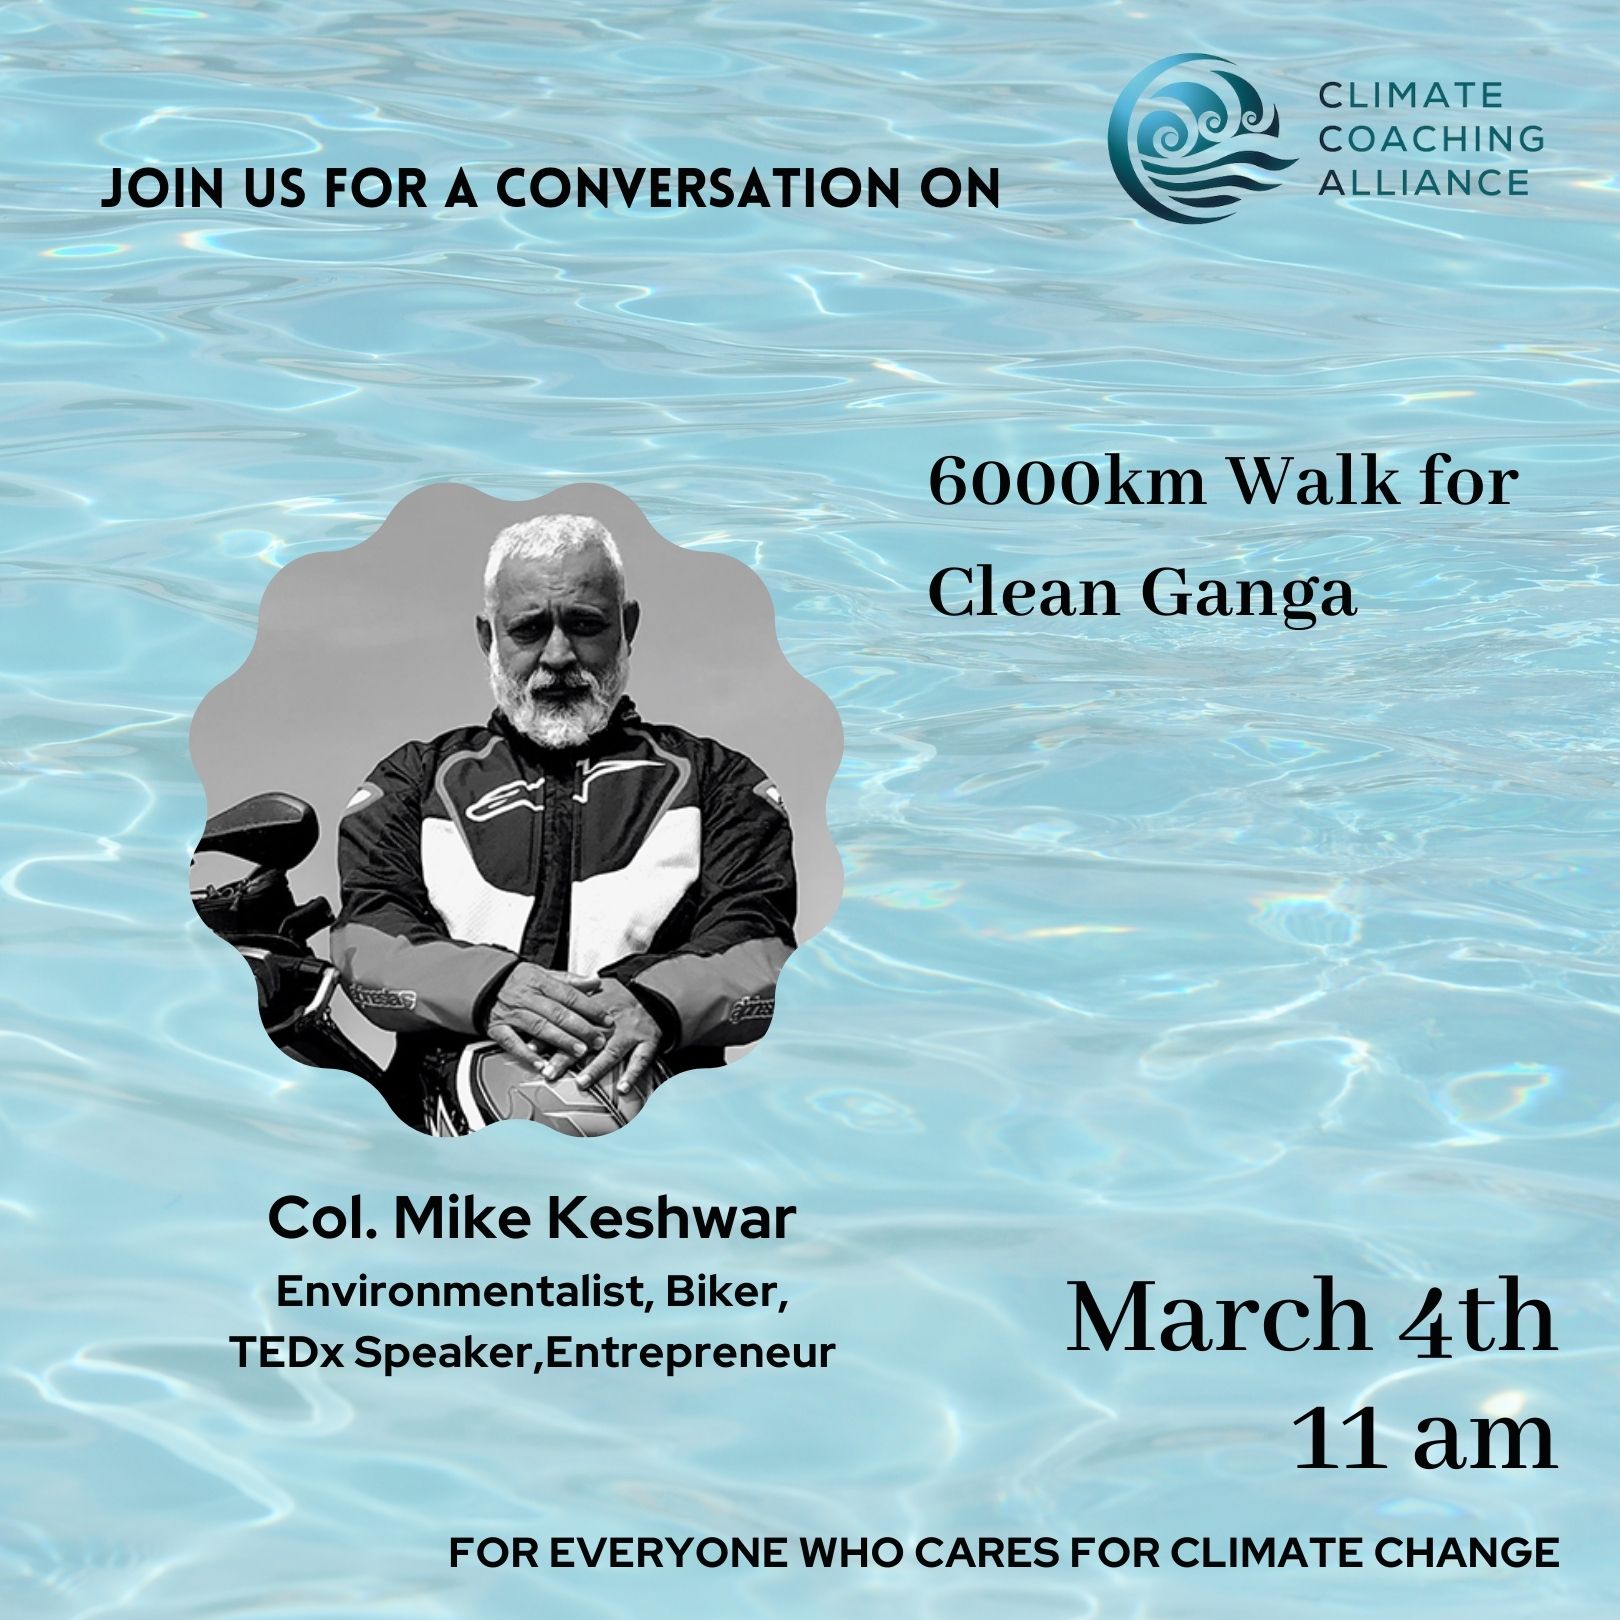 6000km walk for Clean Ganga